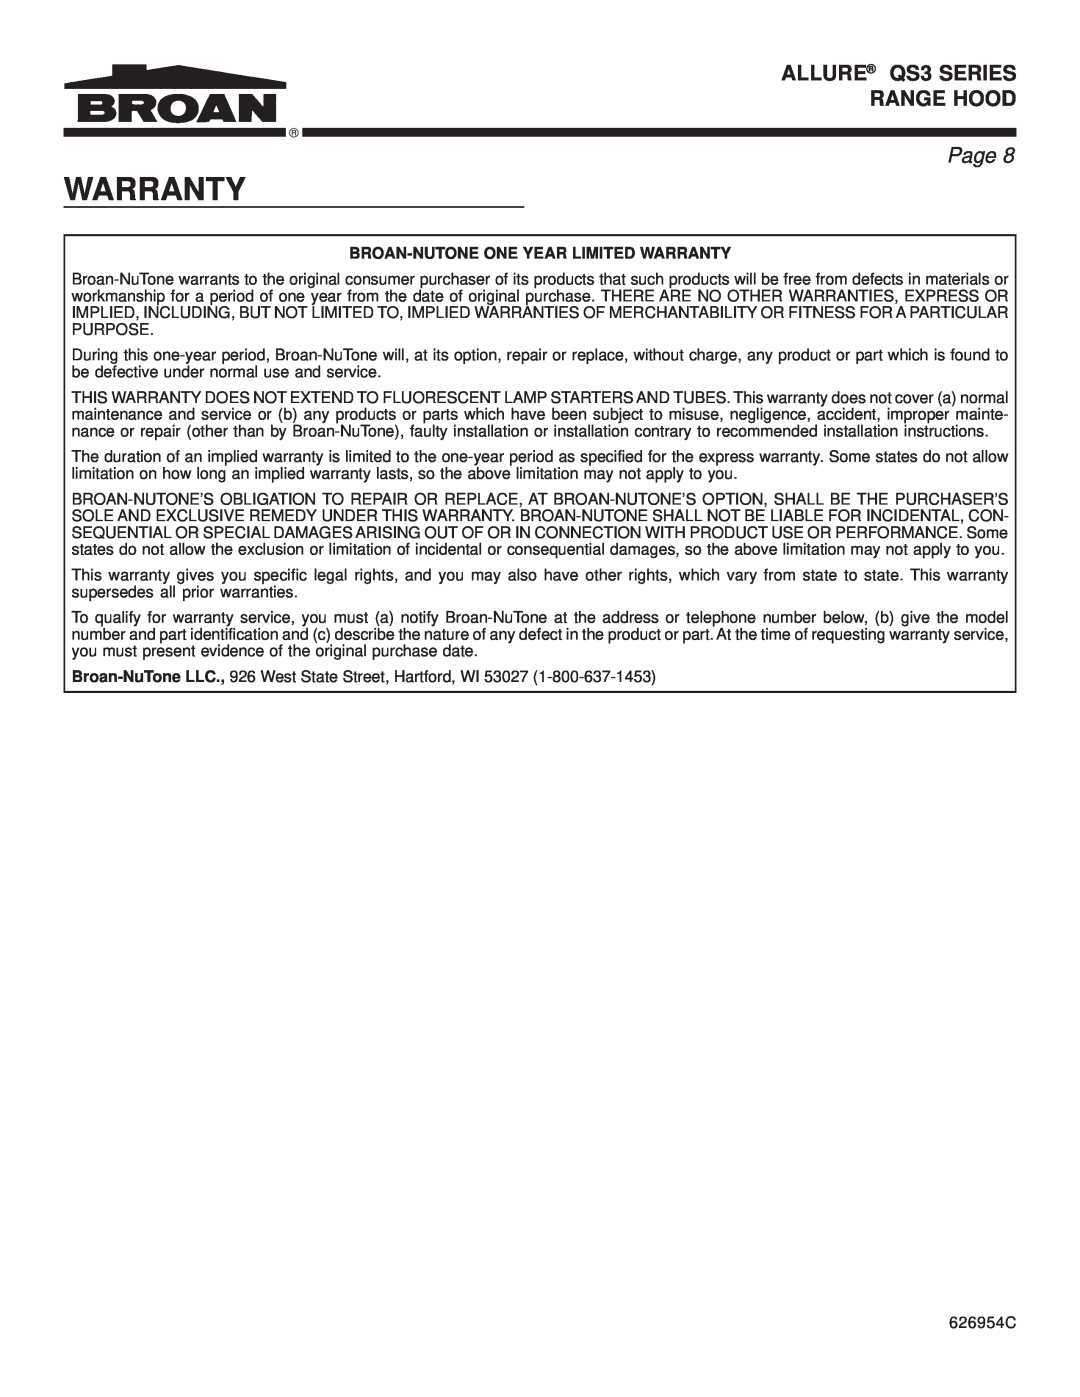 Broan warranty ALLURE QS3 SERIES RANGE HOOD, Page, Broan-Nutoneone Year Limited Warranty 